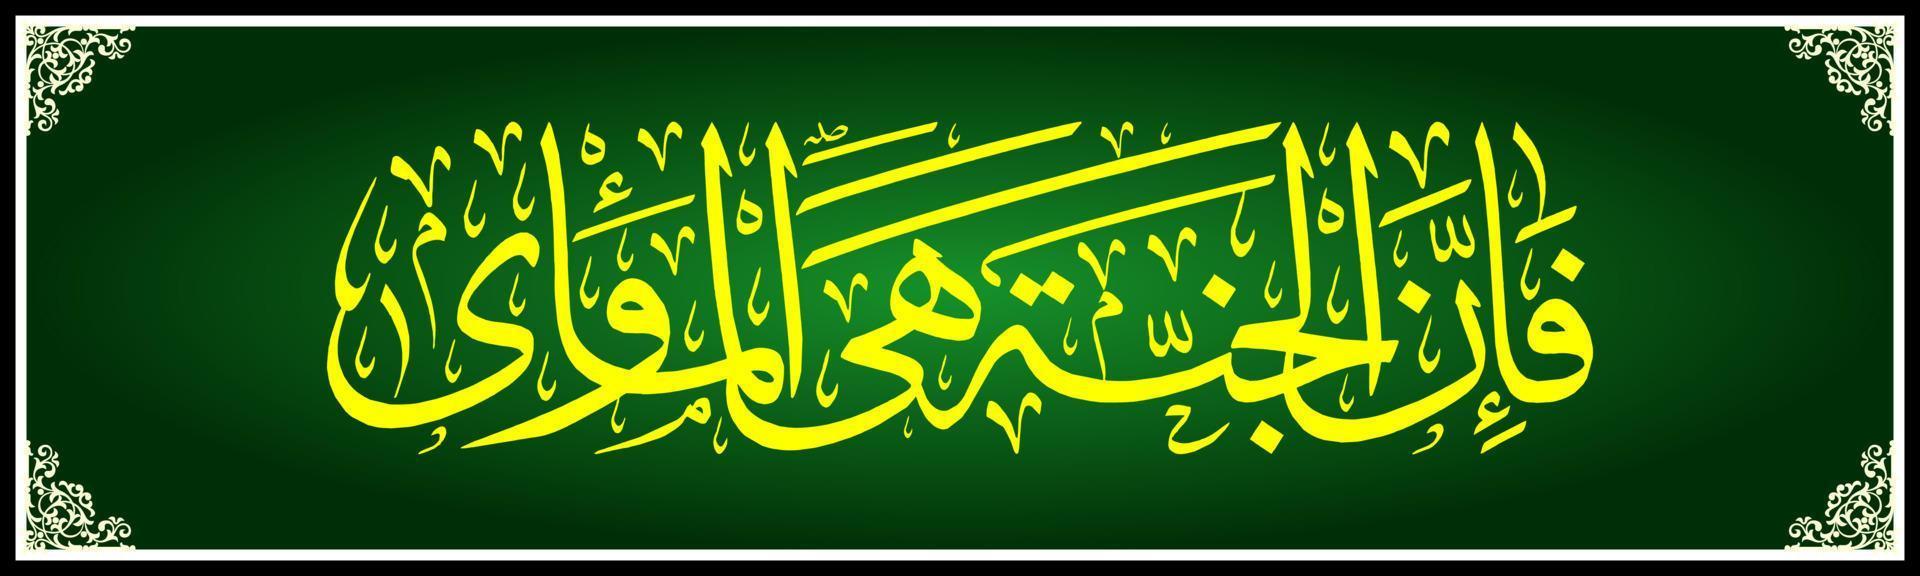 caligrafia árabe, al qur'an surah an naziat 41 , tradução então, na verdade, o céu é um lugar para se viver. vetor